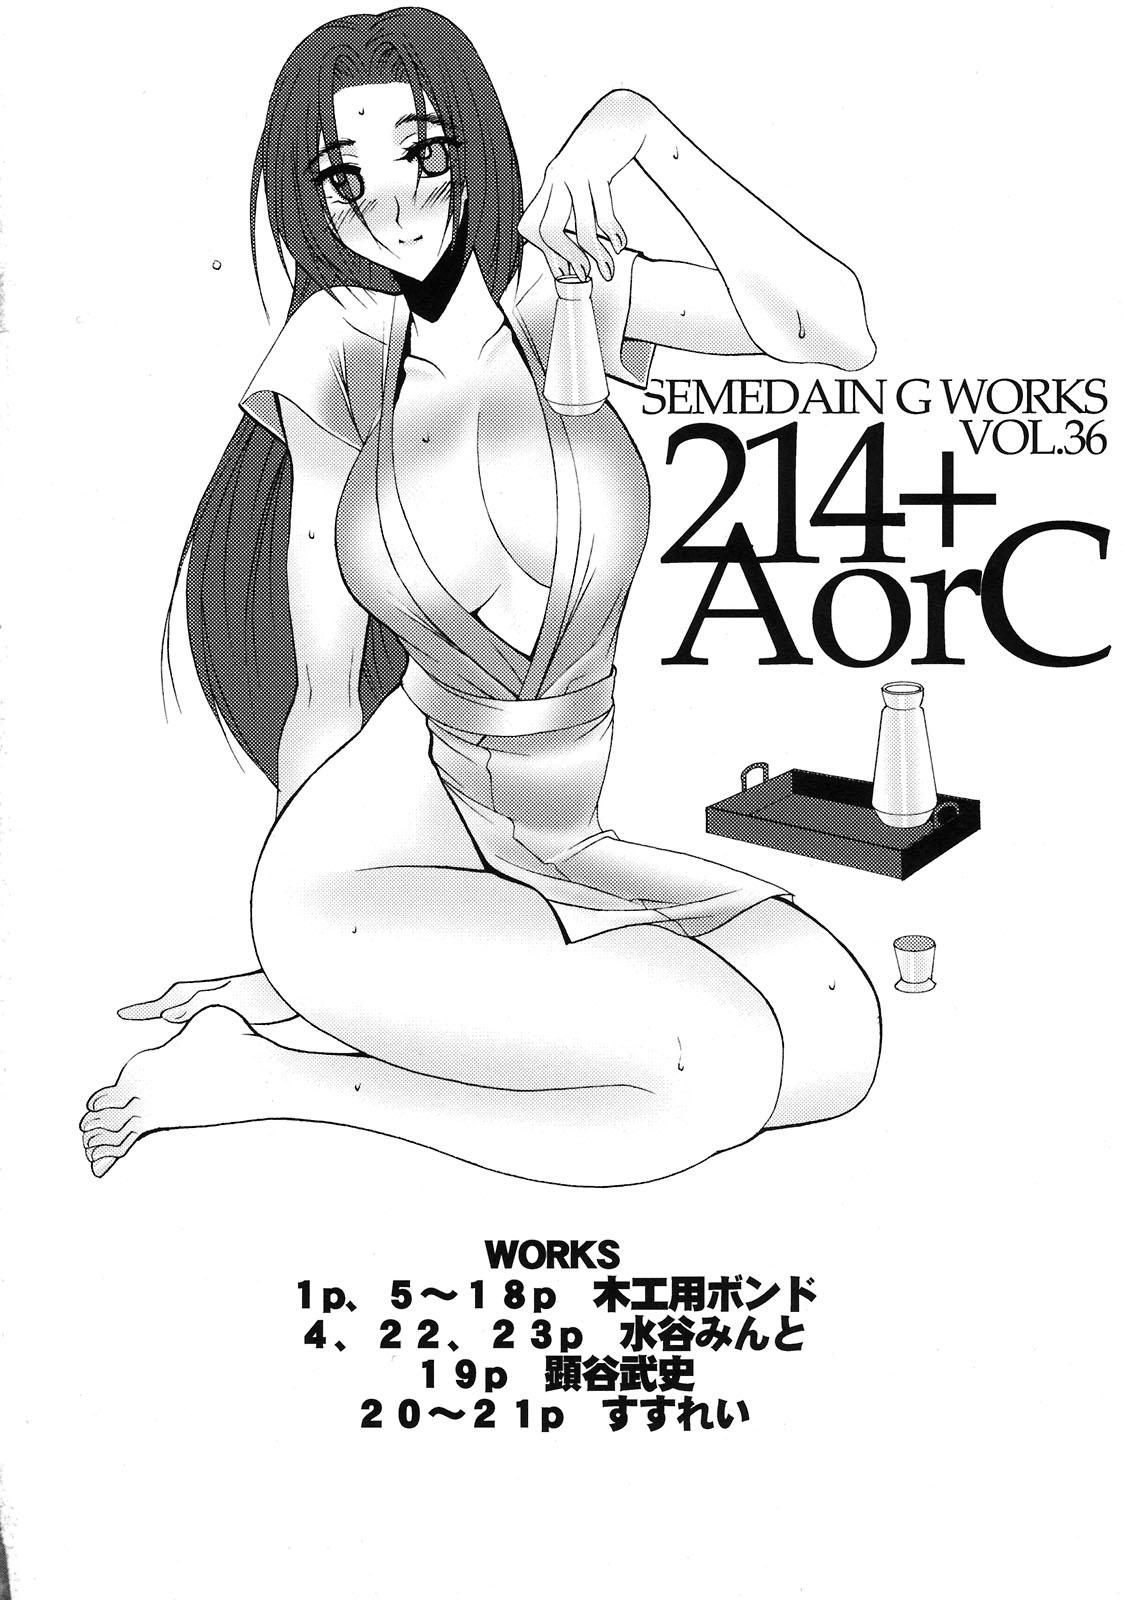 214+AorC 3